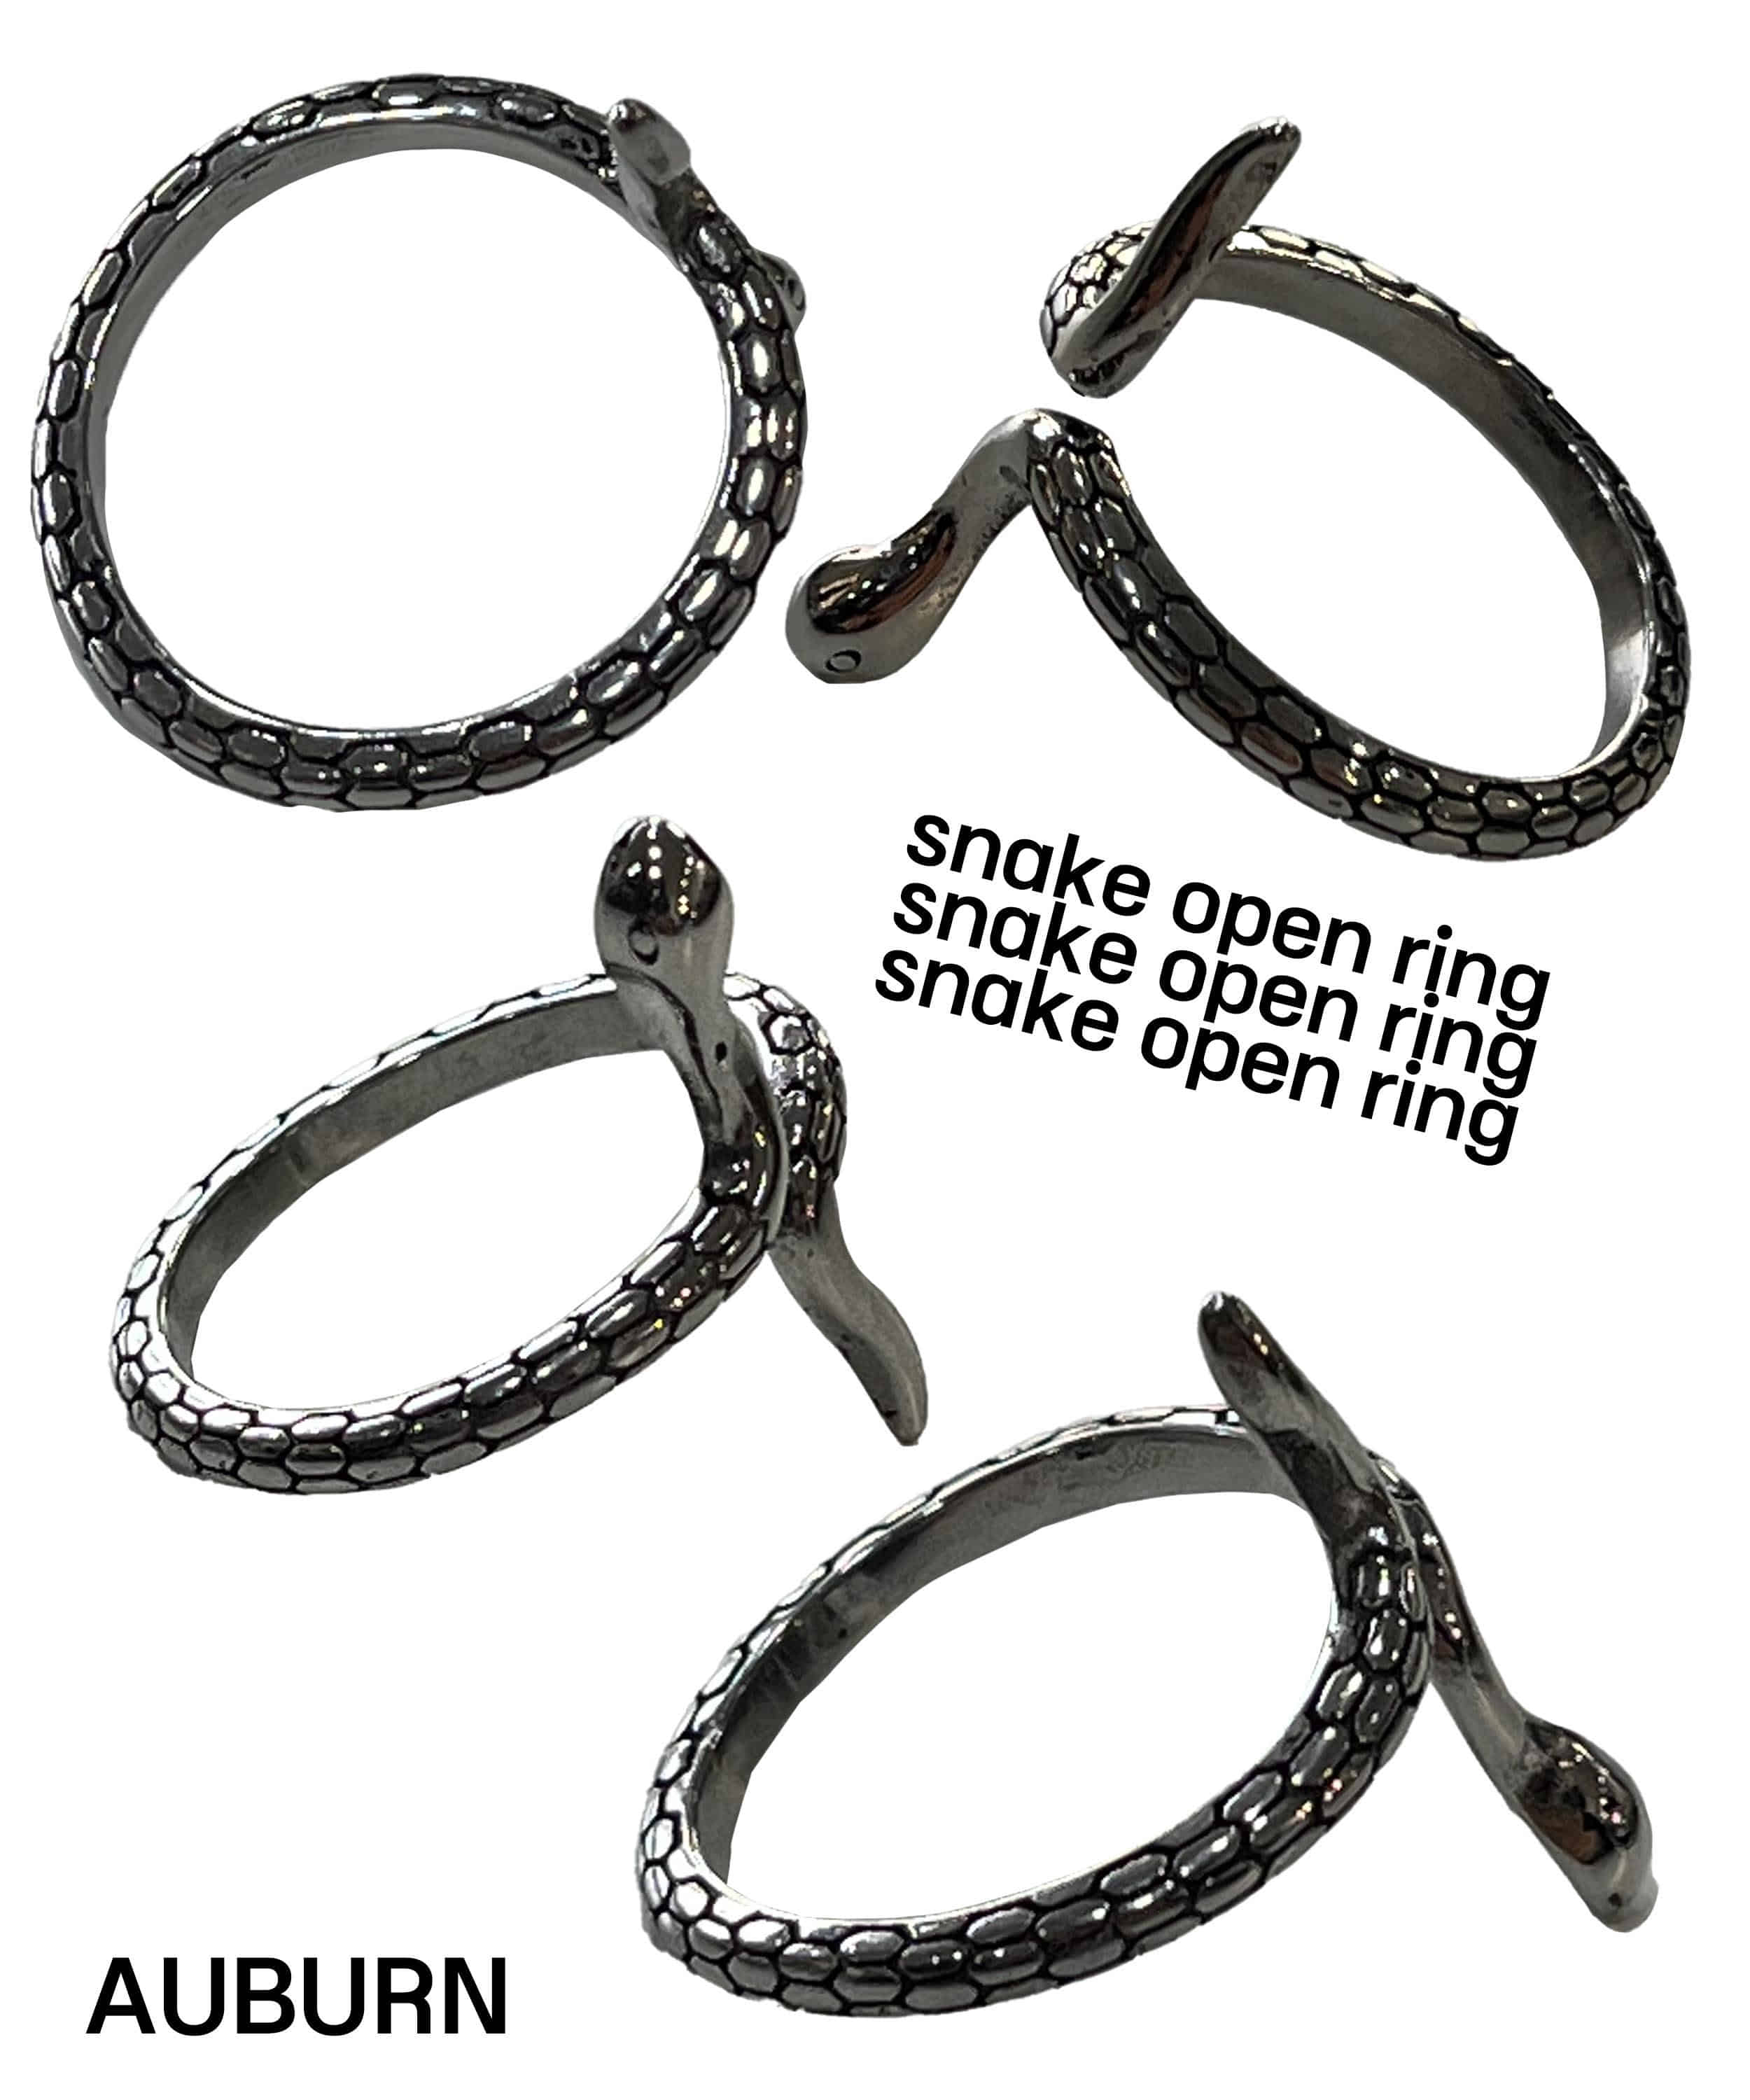 snake open ring